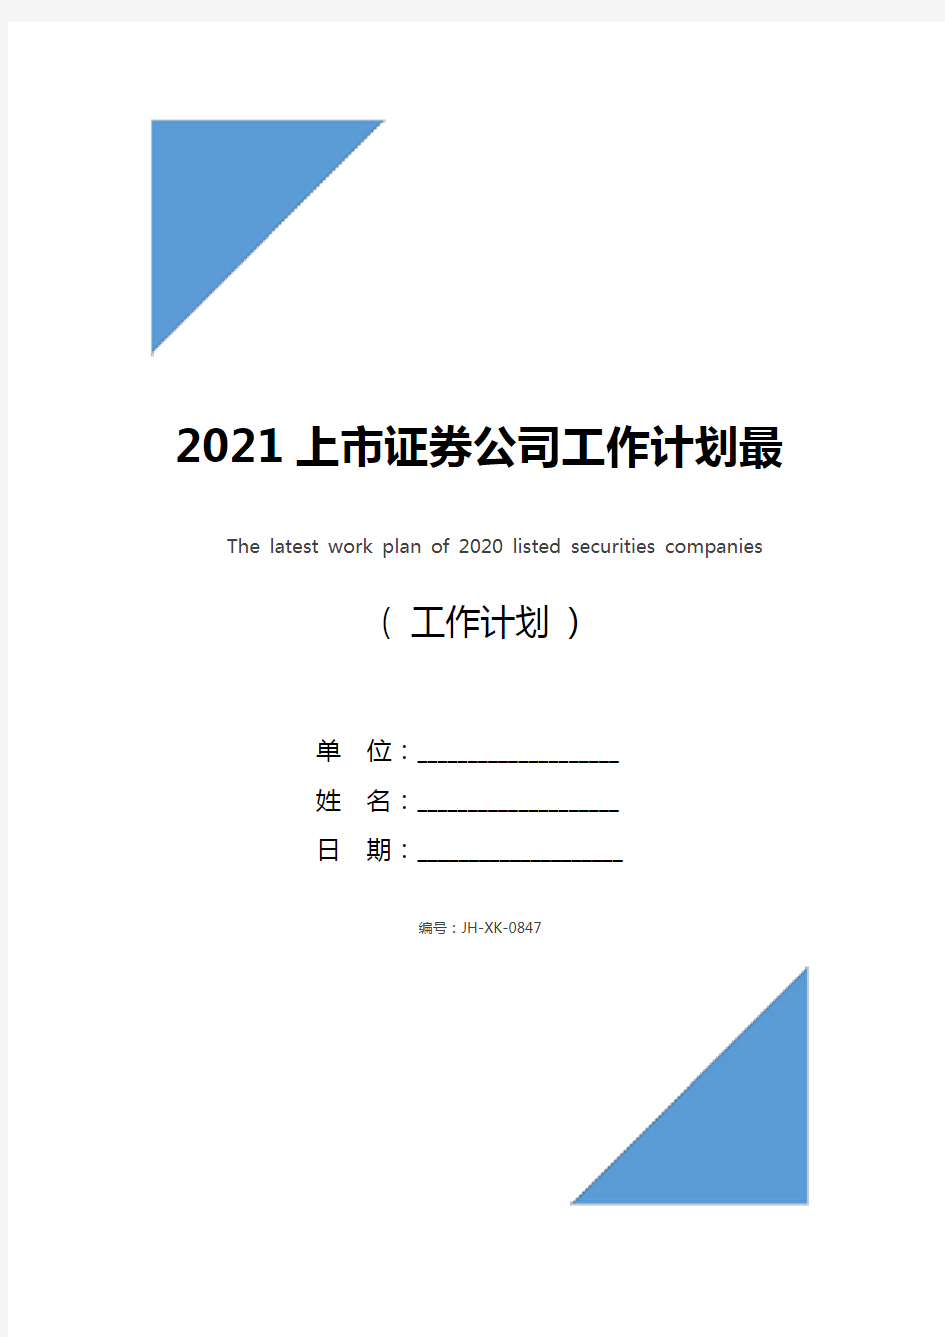 2021上市证券公司工作计划最新(新版)